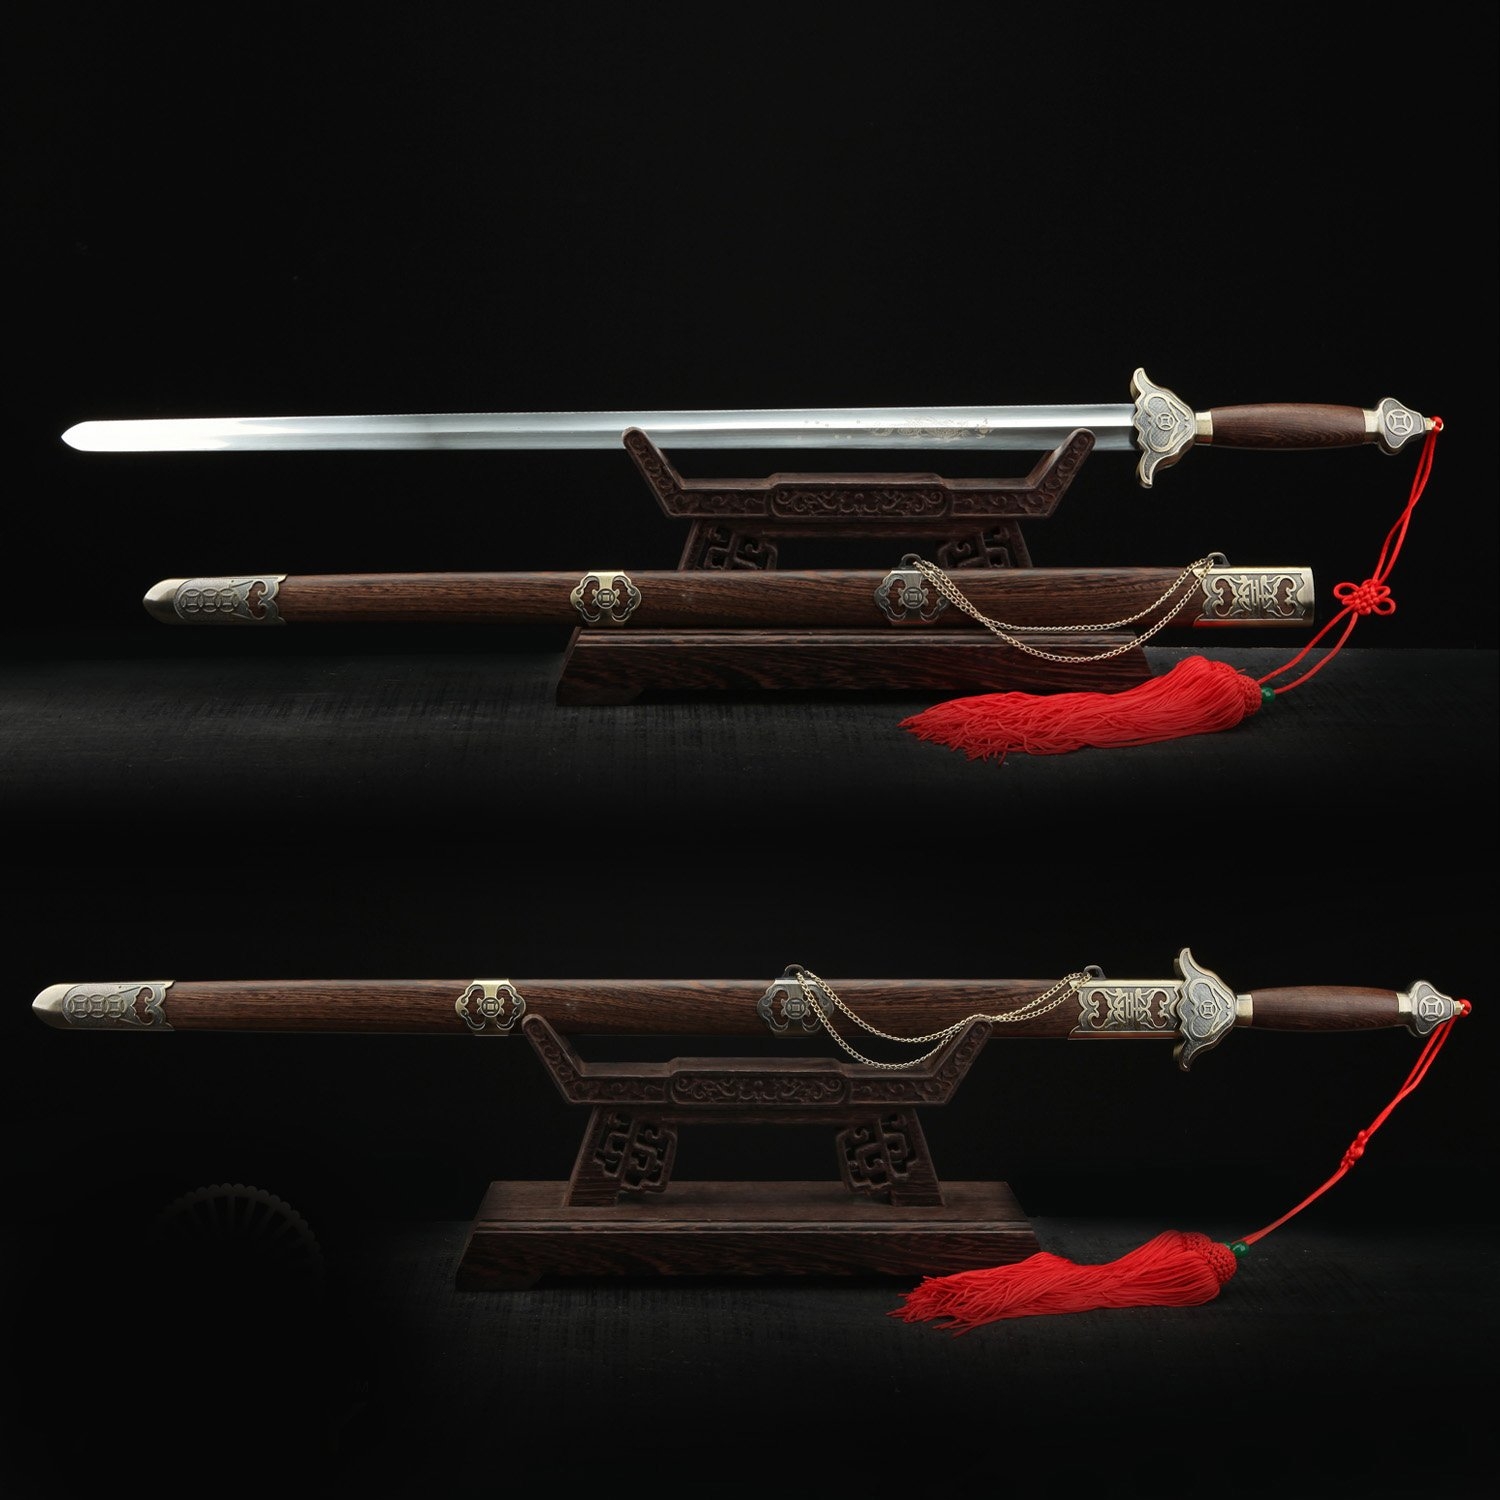 Tai Chi Sword | Chinese Straight Sword, Handmade Chinese Tai Chi Sword ...